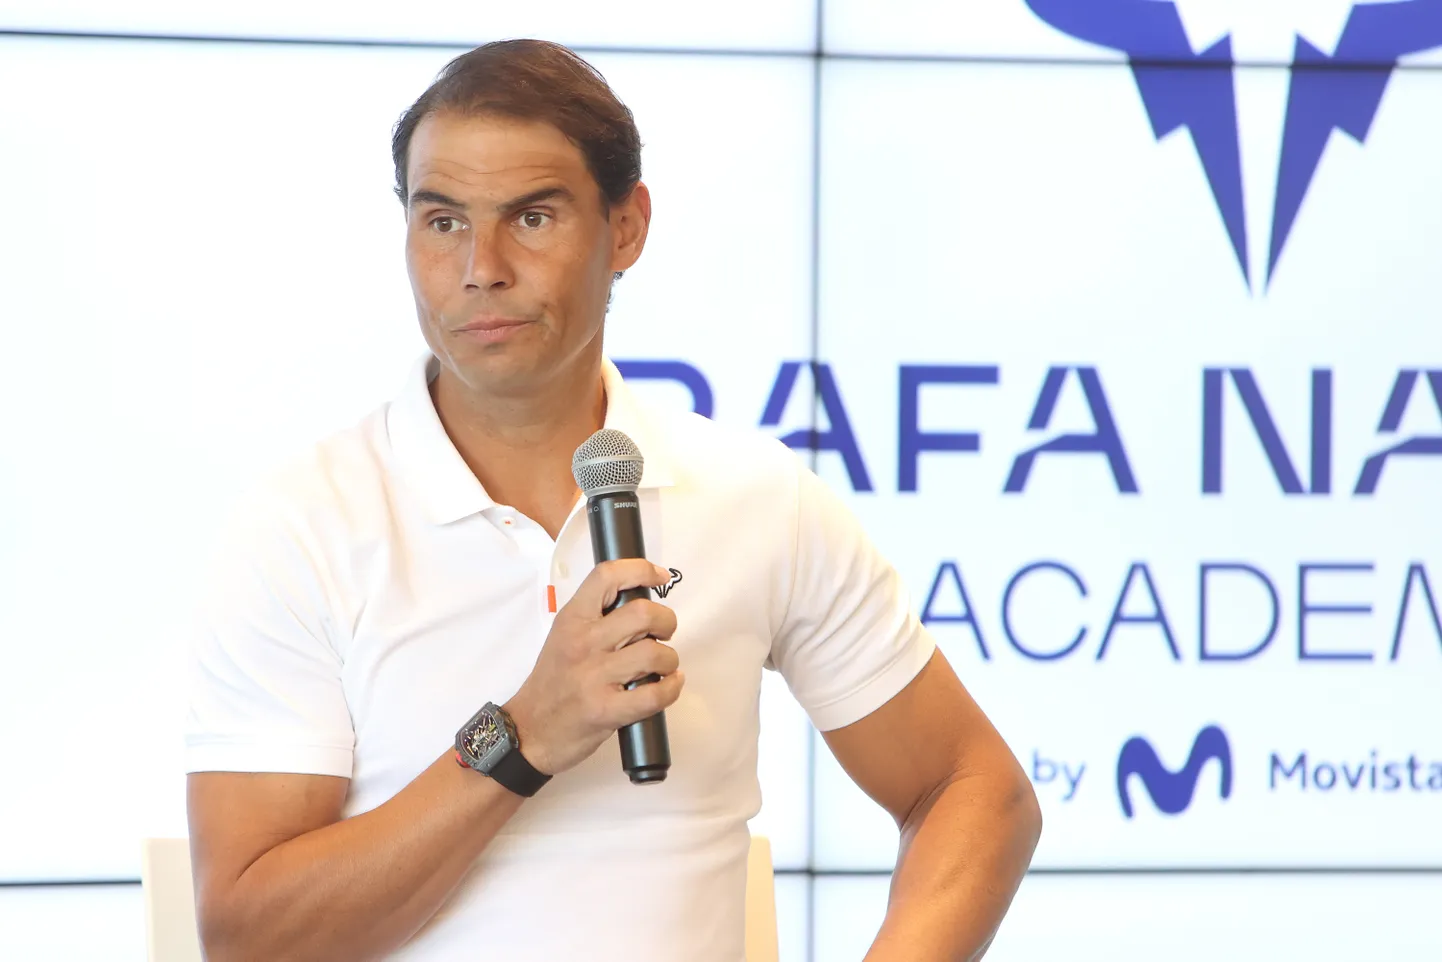 Rafael Nadal on karjääri jooksul võitnud 22 Suure slämmi turniiri.